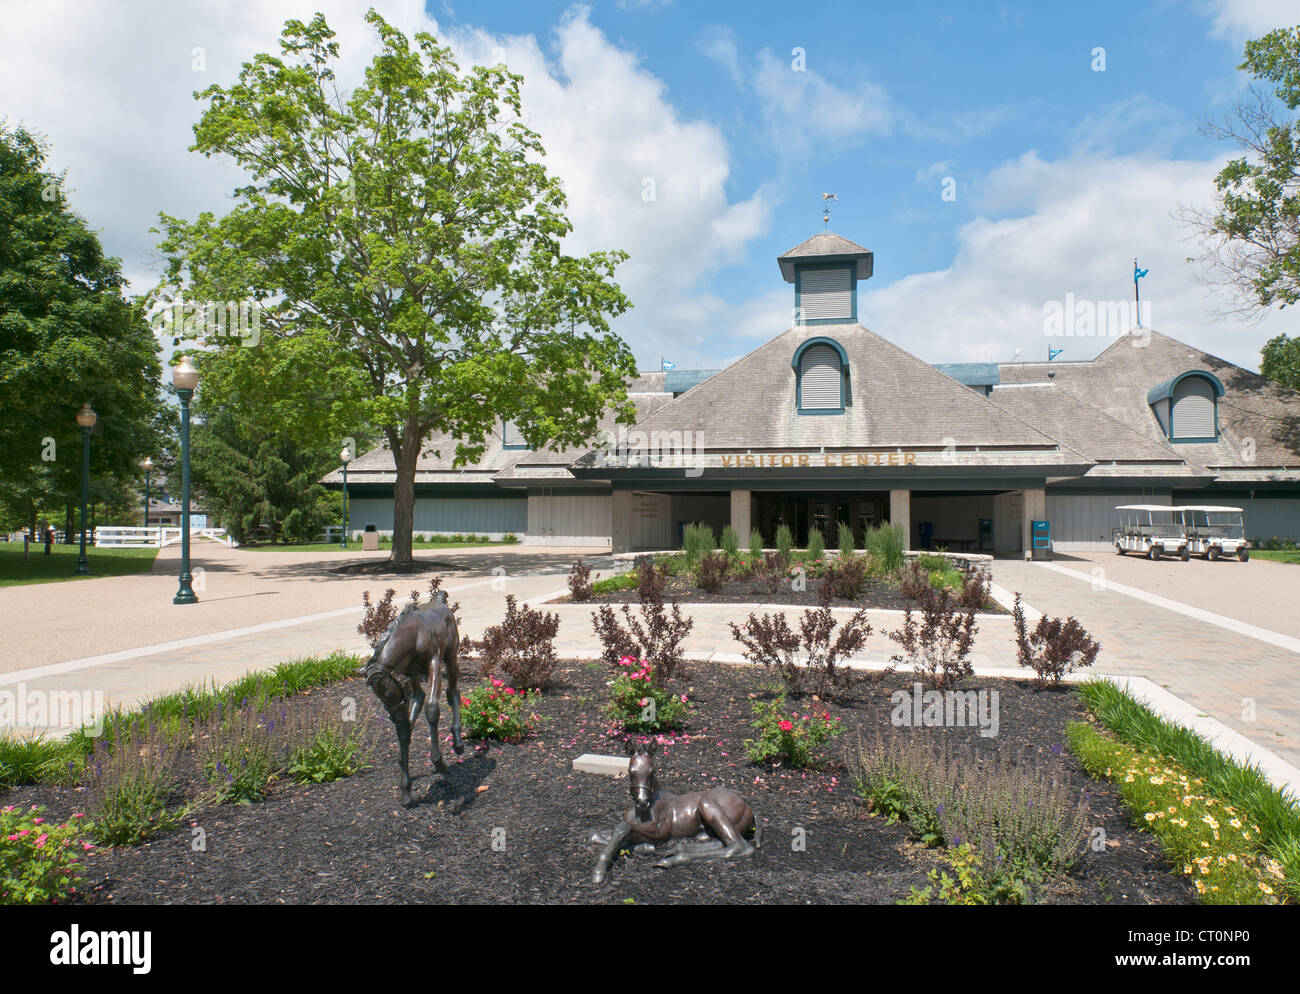 Kentucky, Lexington, Kentucky Horse Park, The National Horse Center, Visitor Center. Stock Photo